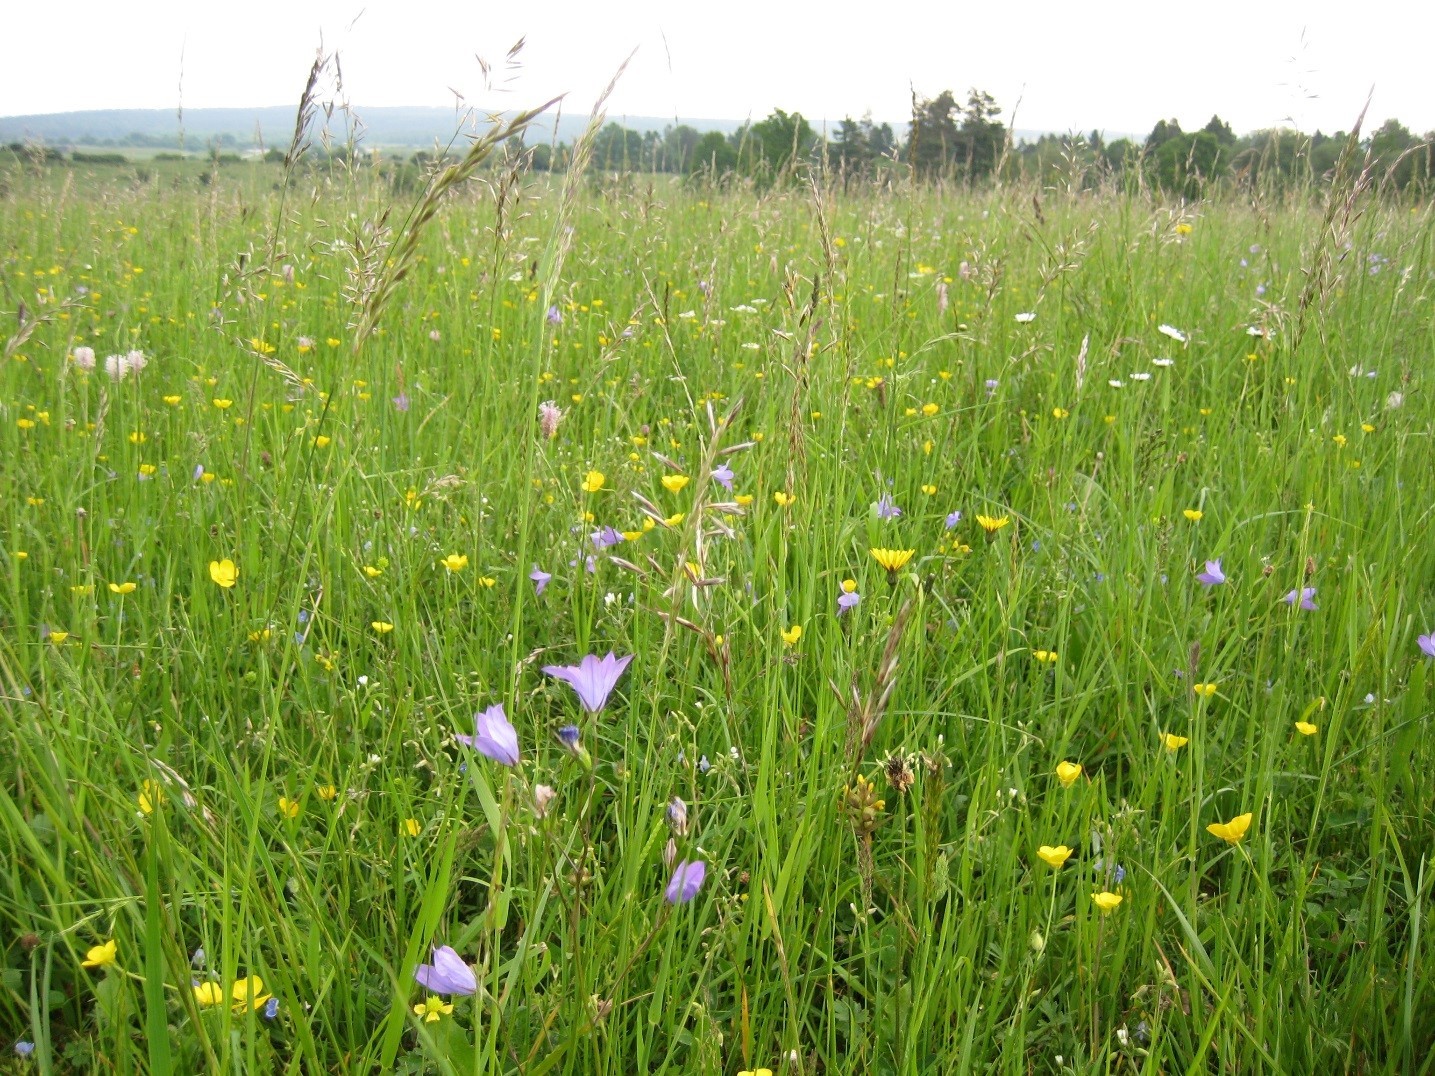 Die Beweidung der wildlebenden Rothirsche trägt dazu bei, artenreiches Grünland auf dem Truppenübungsplatz Grafenwöhr zu erhalten.